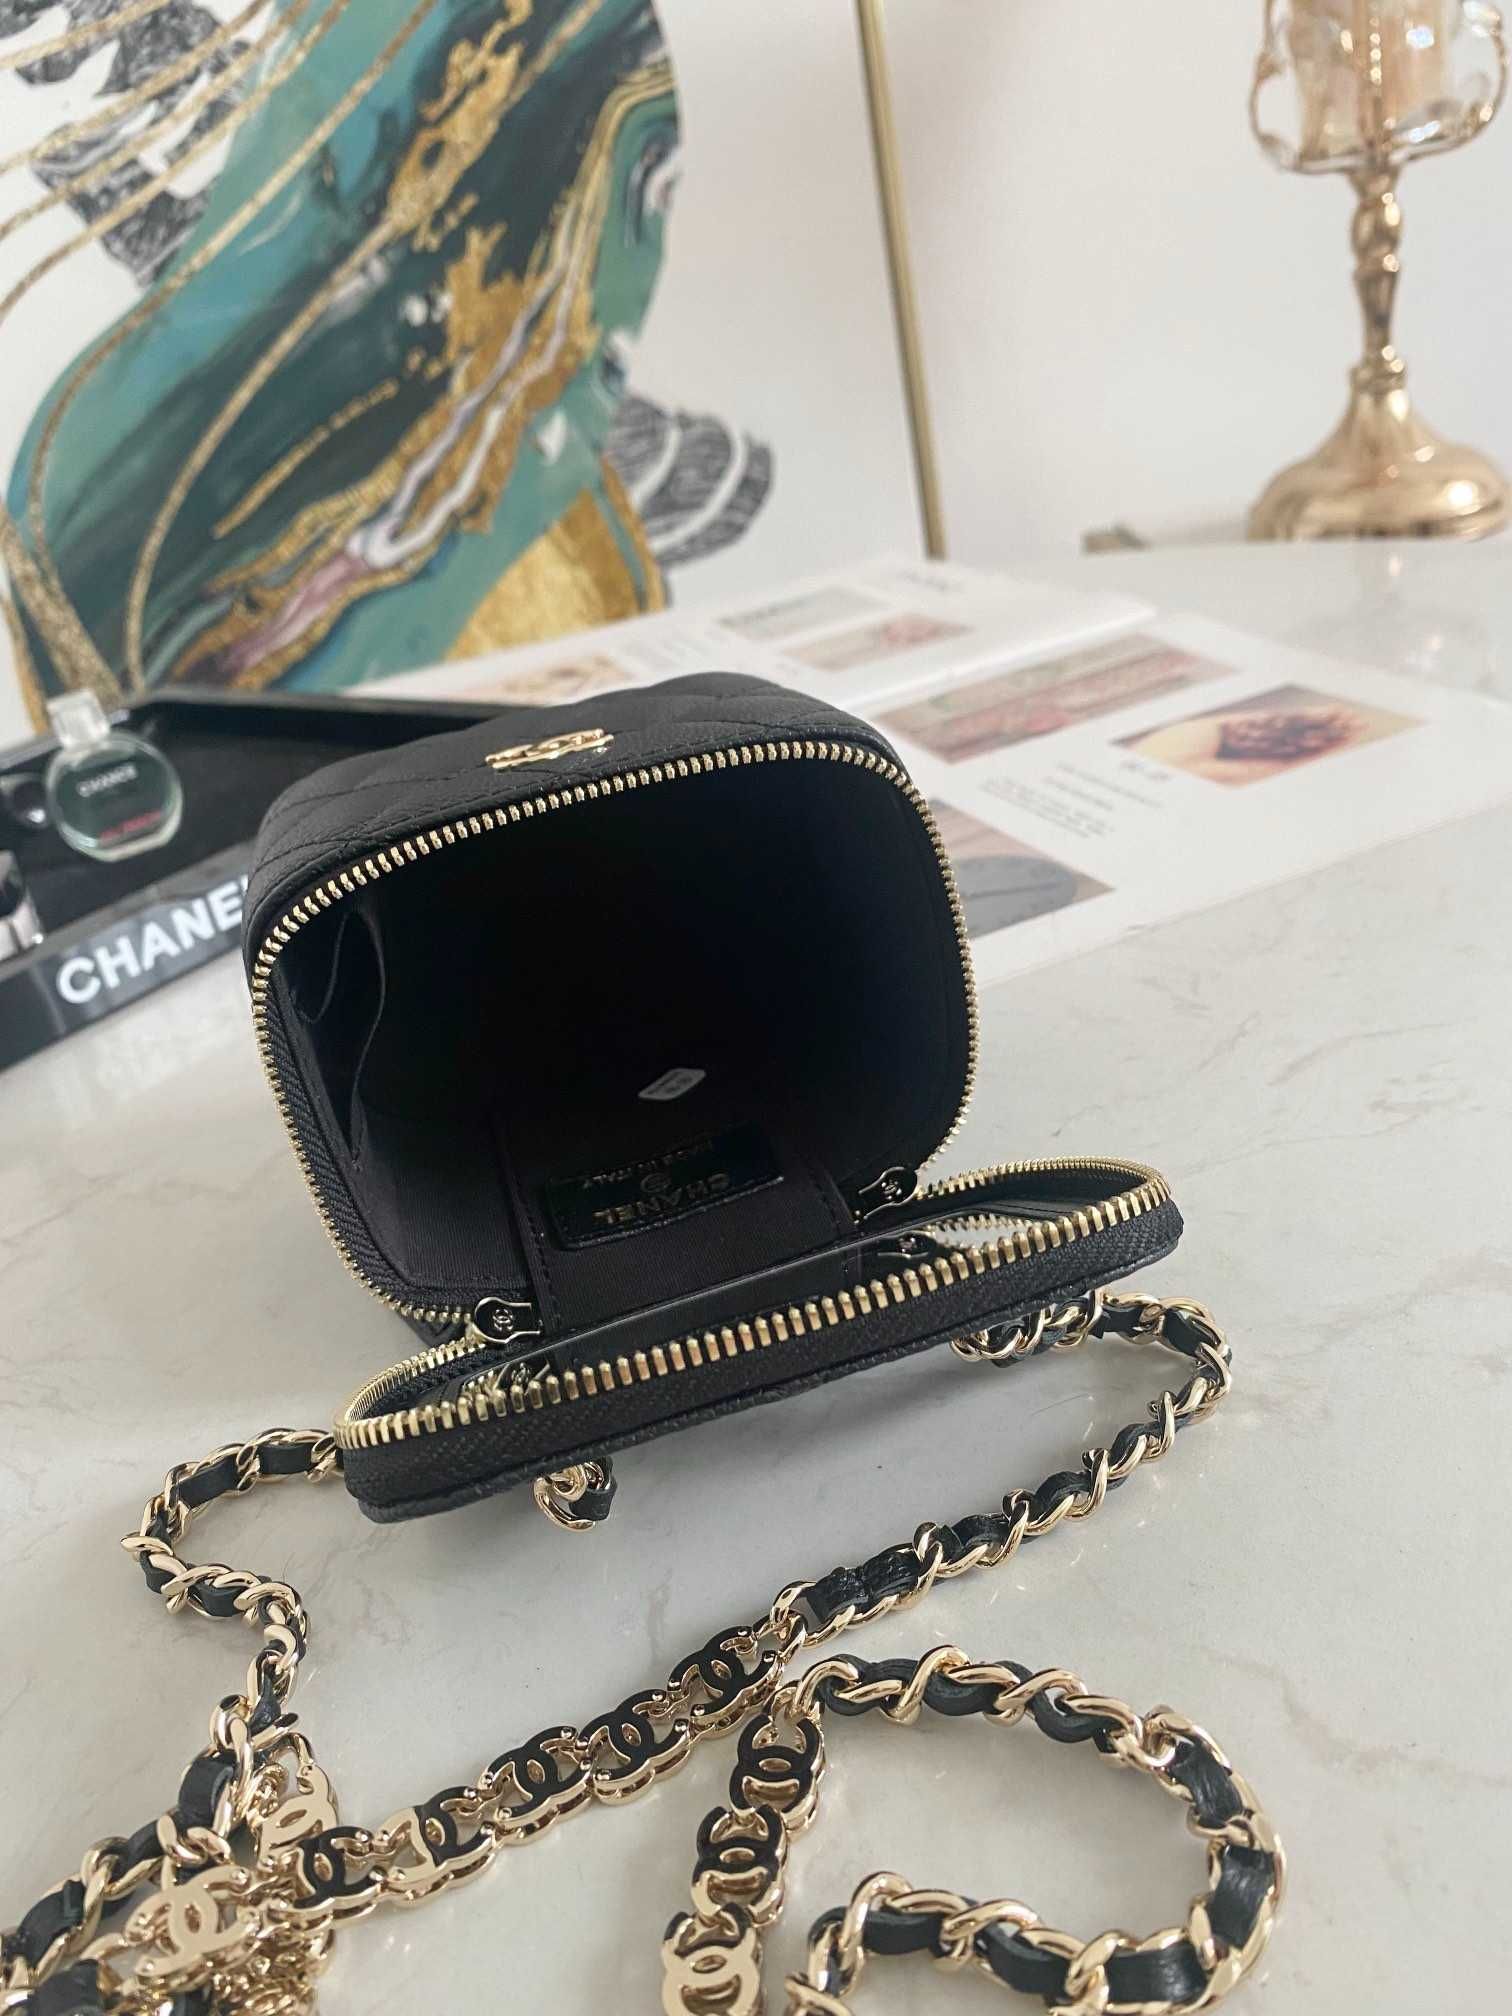 Chanel Vanity bag mini - chained/premium/mini&small